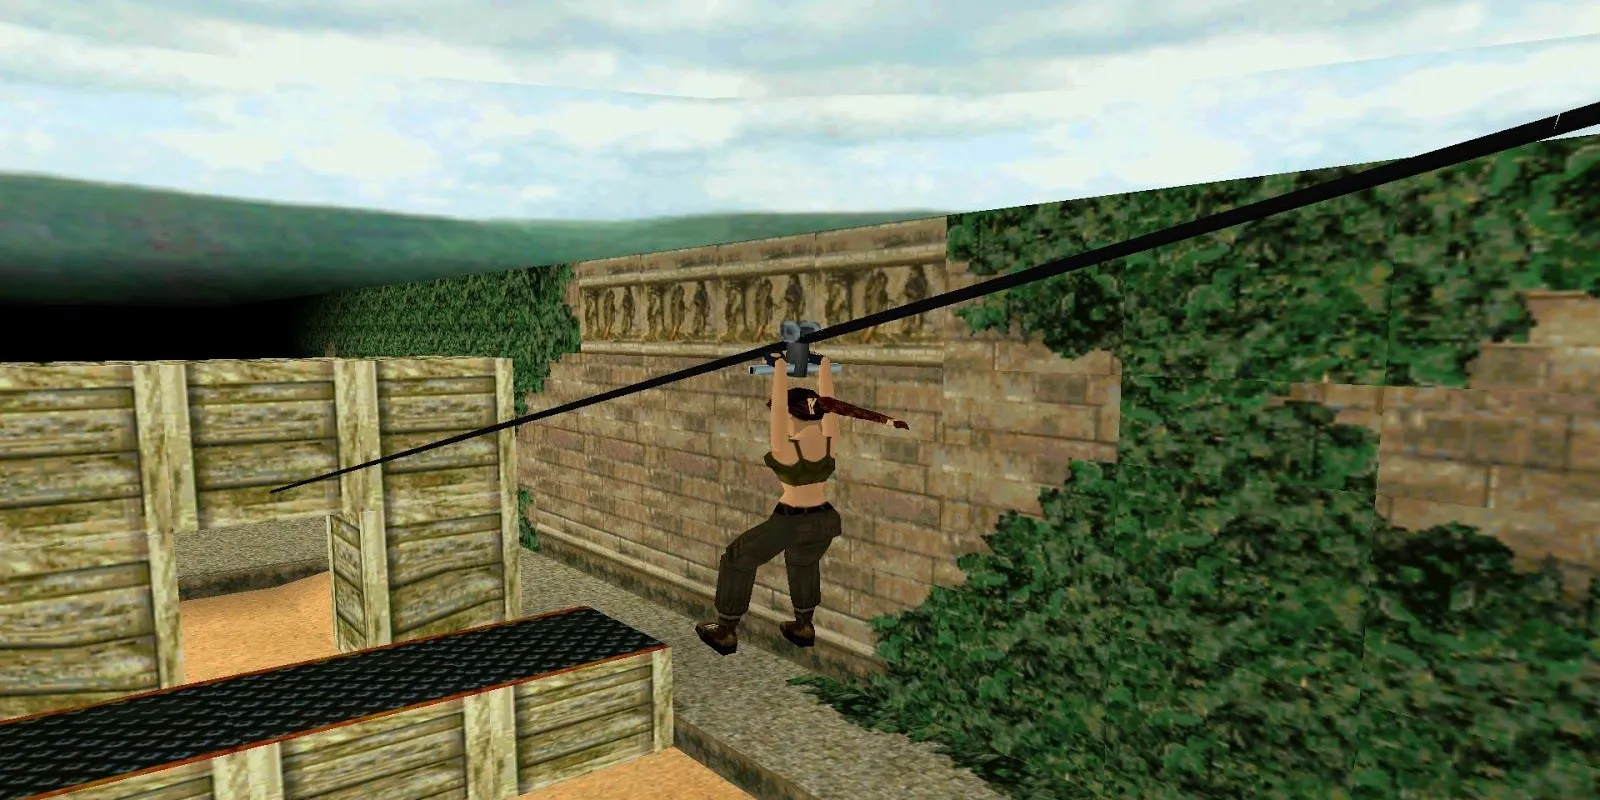 Parcours d'assaut du manoir Croft dans Tomb Raider 3